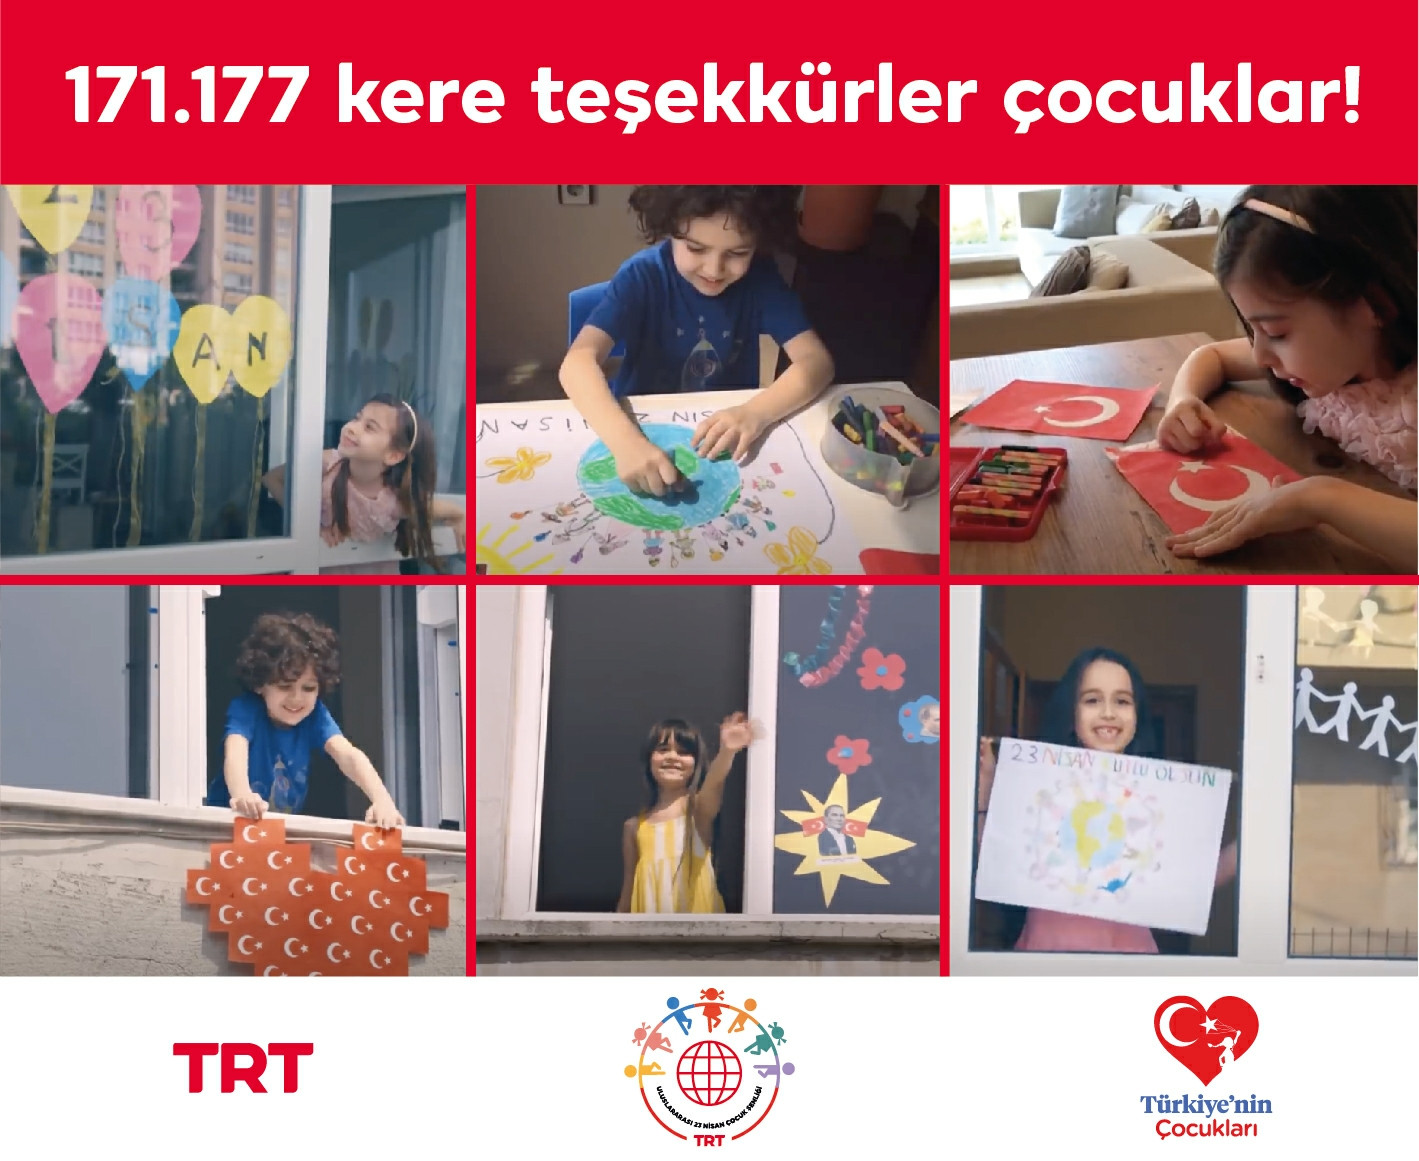 TRT'nin kampanyasına rekor katılım: 171 Bin 177 çocuk 23 Nisan videosu gönderdi - Resim: 1